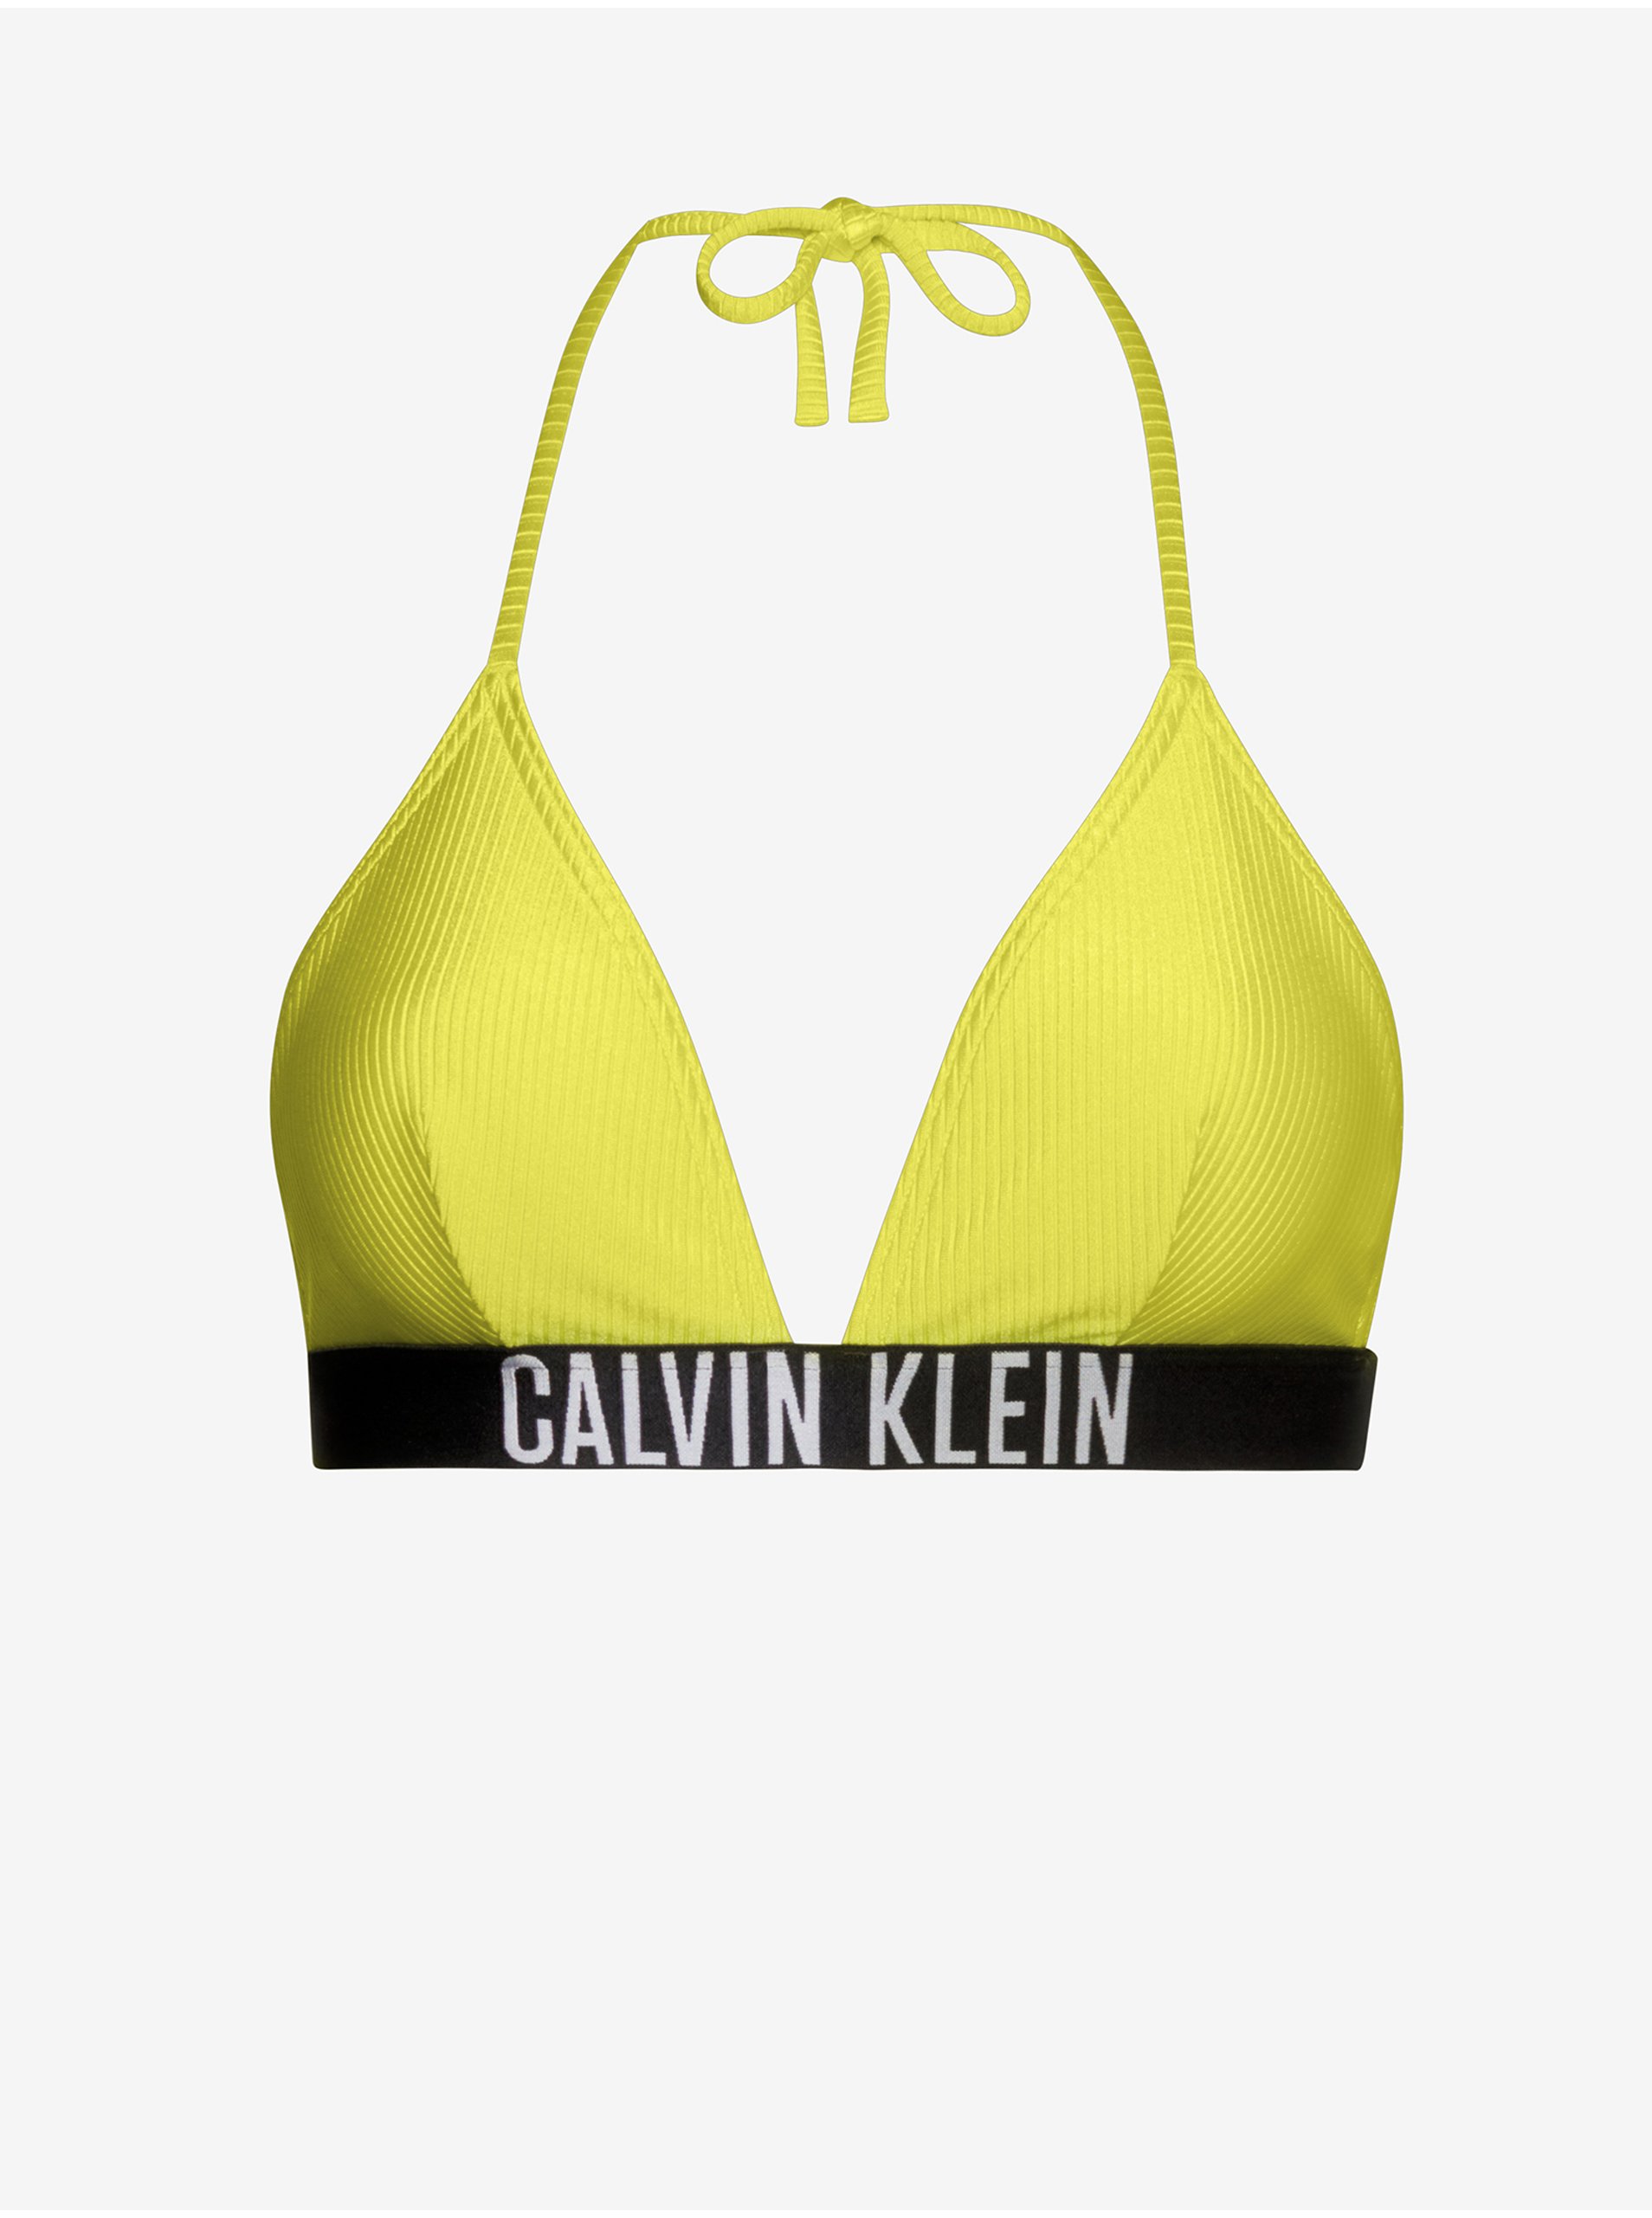 Levně Žlutý dámský vrchní díl plavek Calvin Klein Underwear